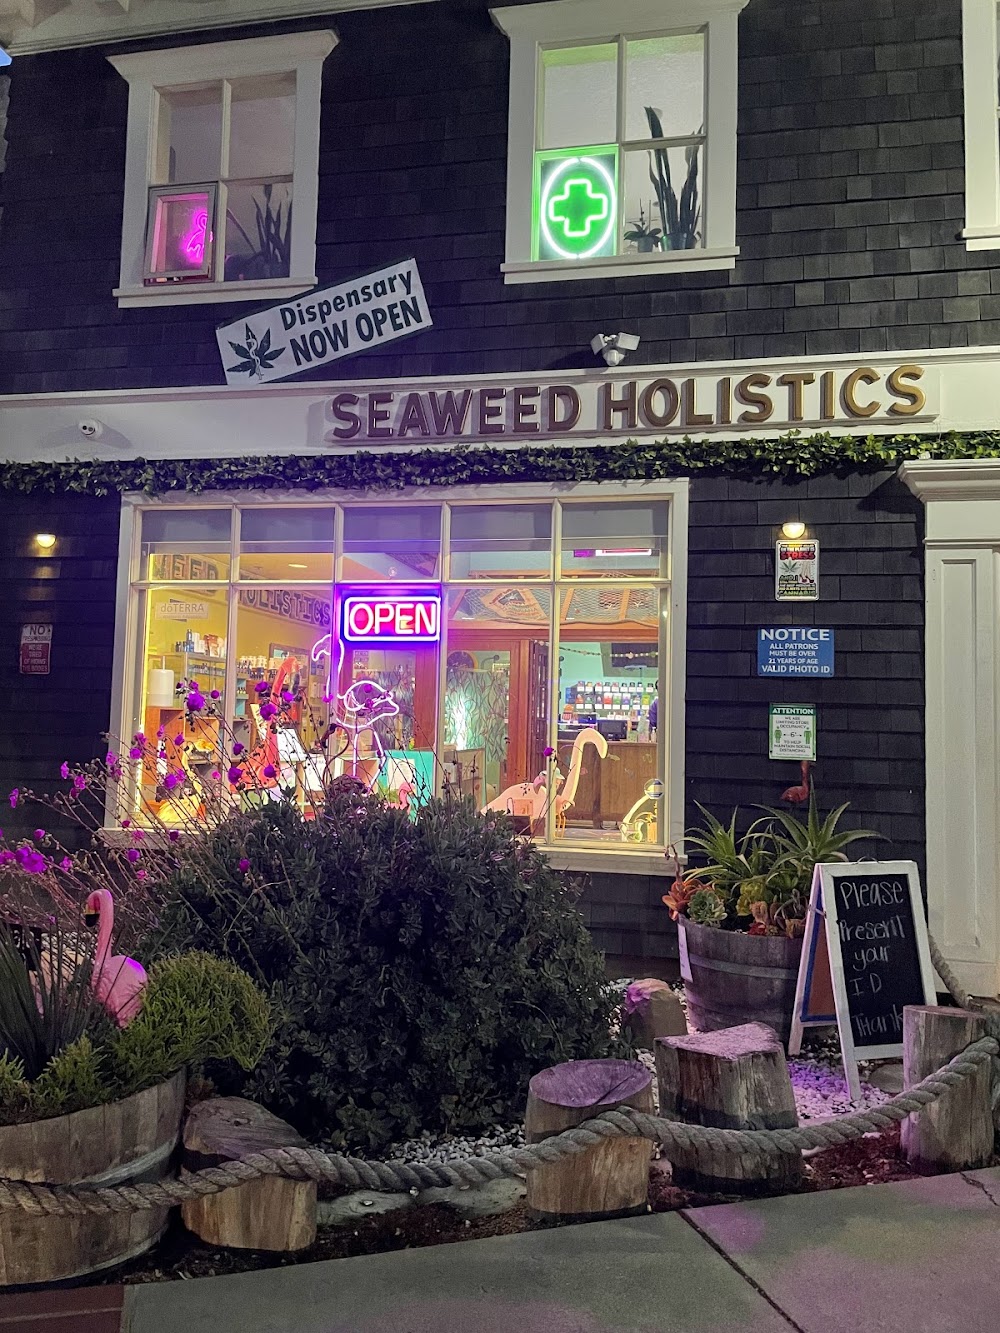 Seaweed Holistics